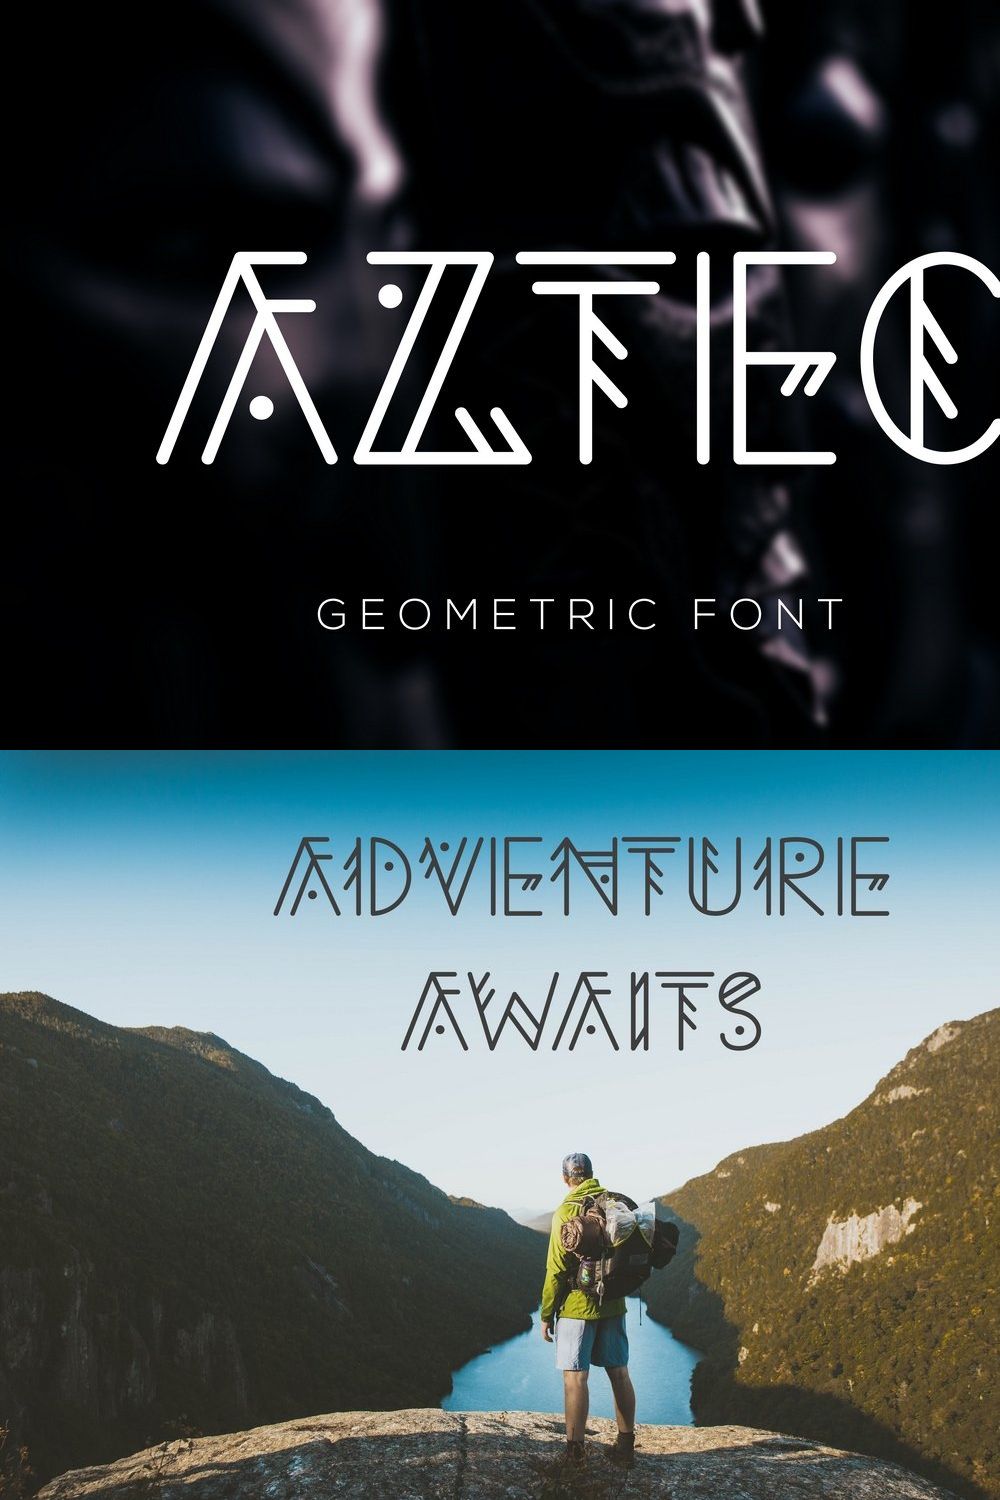 Aztec Geometric Font pinterest preview image.